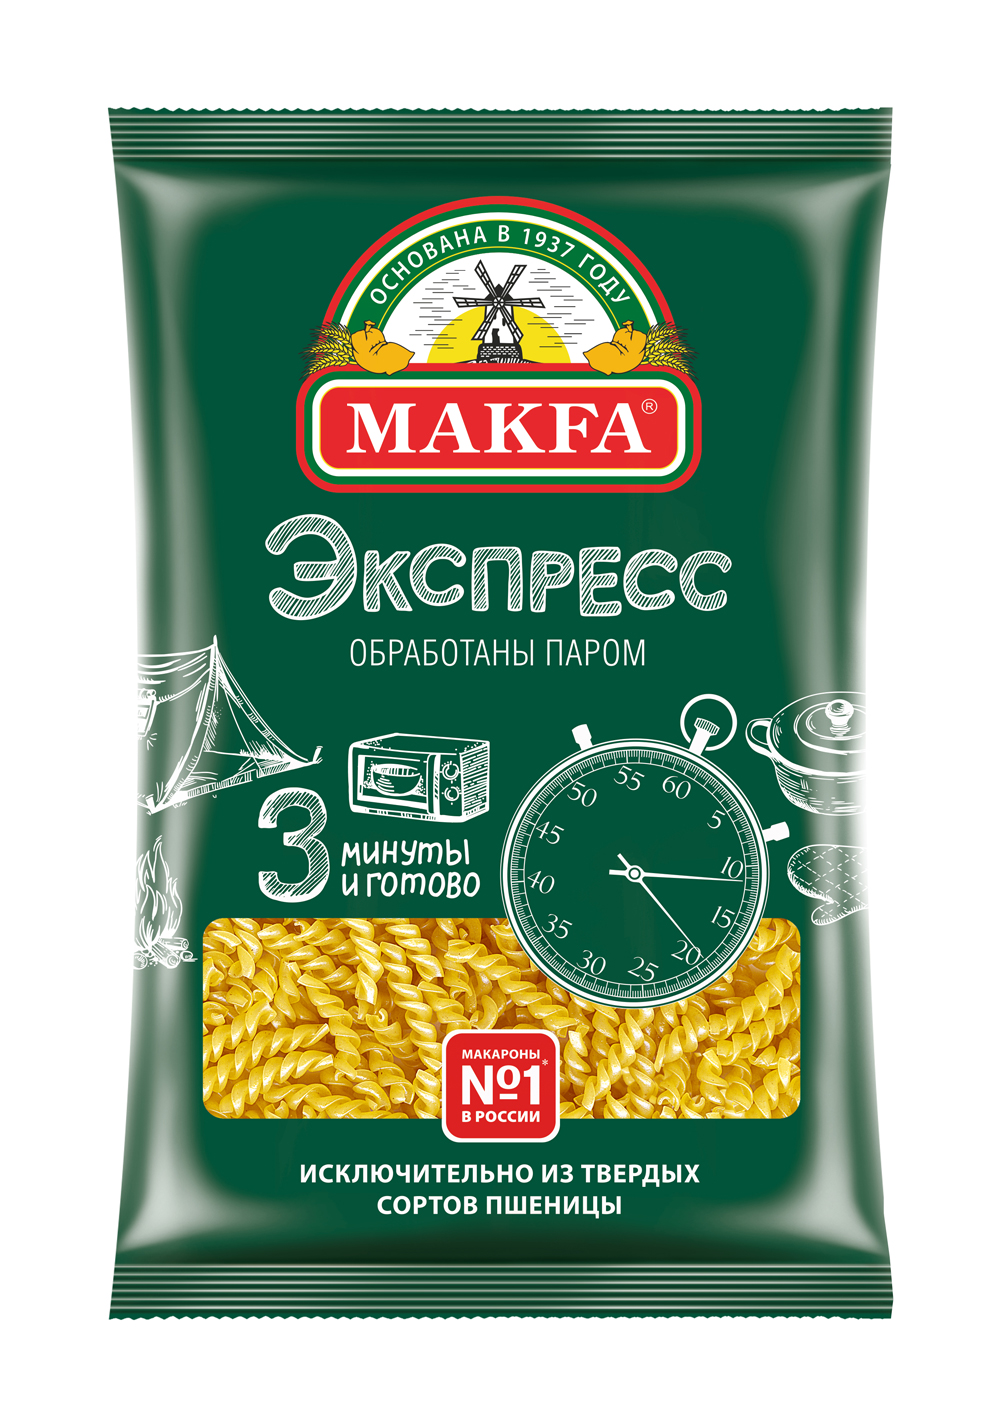 Купить макаронные изделия Makfa экспресс спирали обработанные паром 400 г, цены на Мегамаркет | Артикул: 100023361155